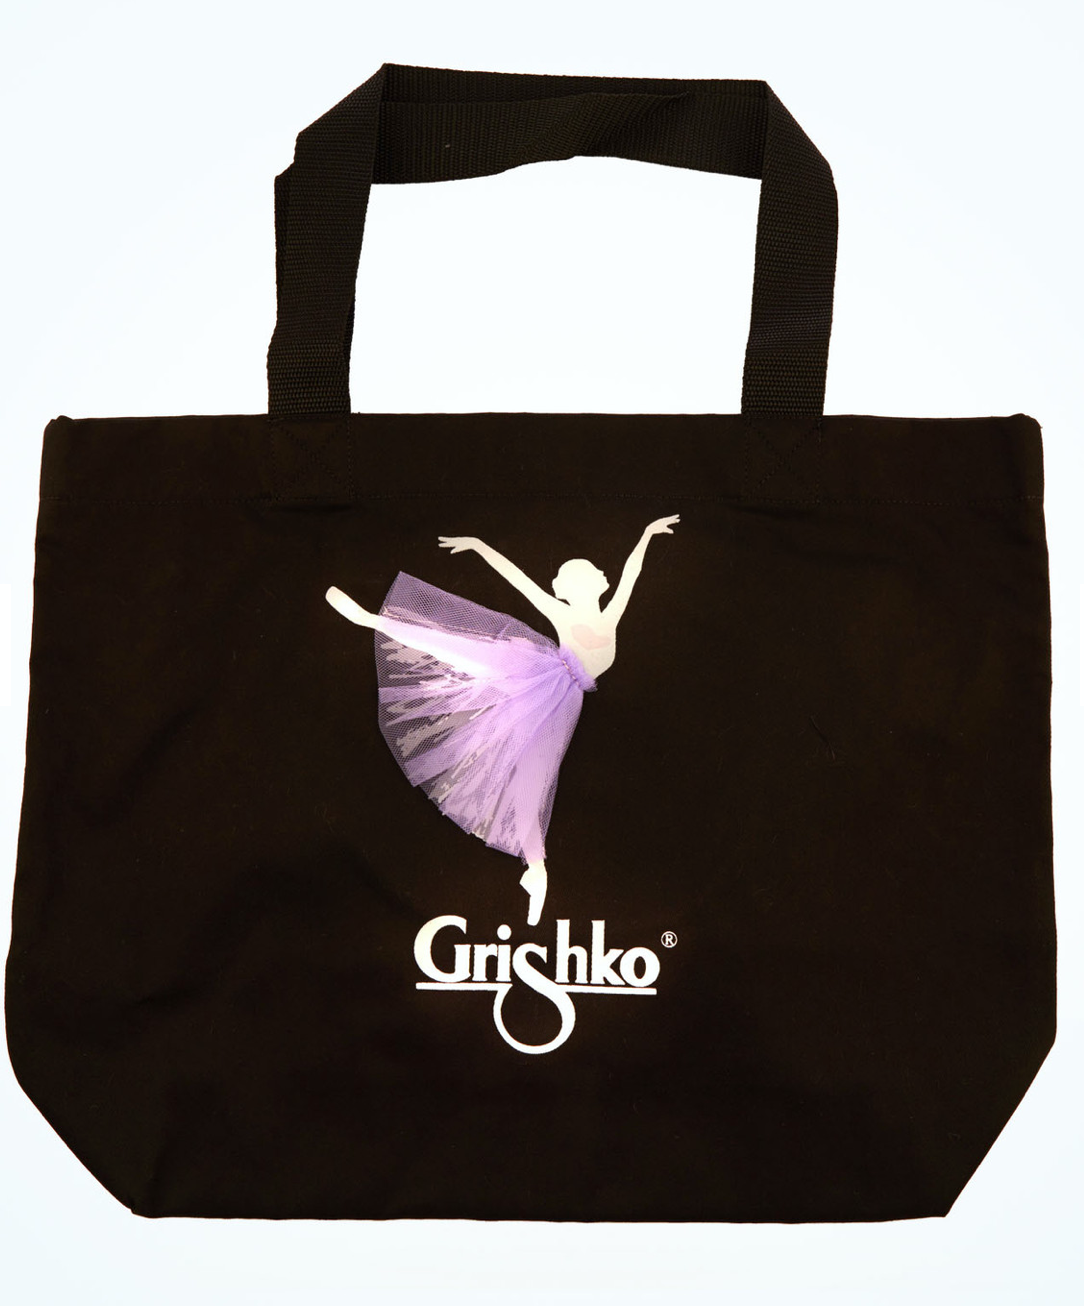 Grishko shoulder bag.